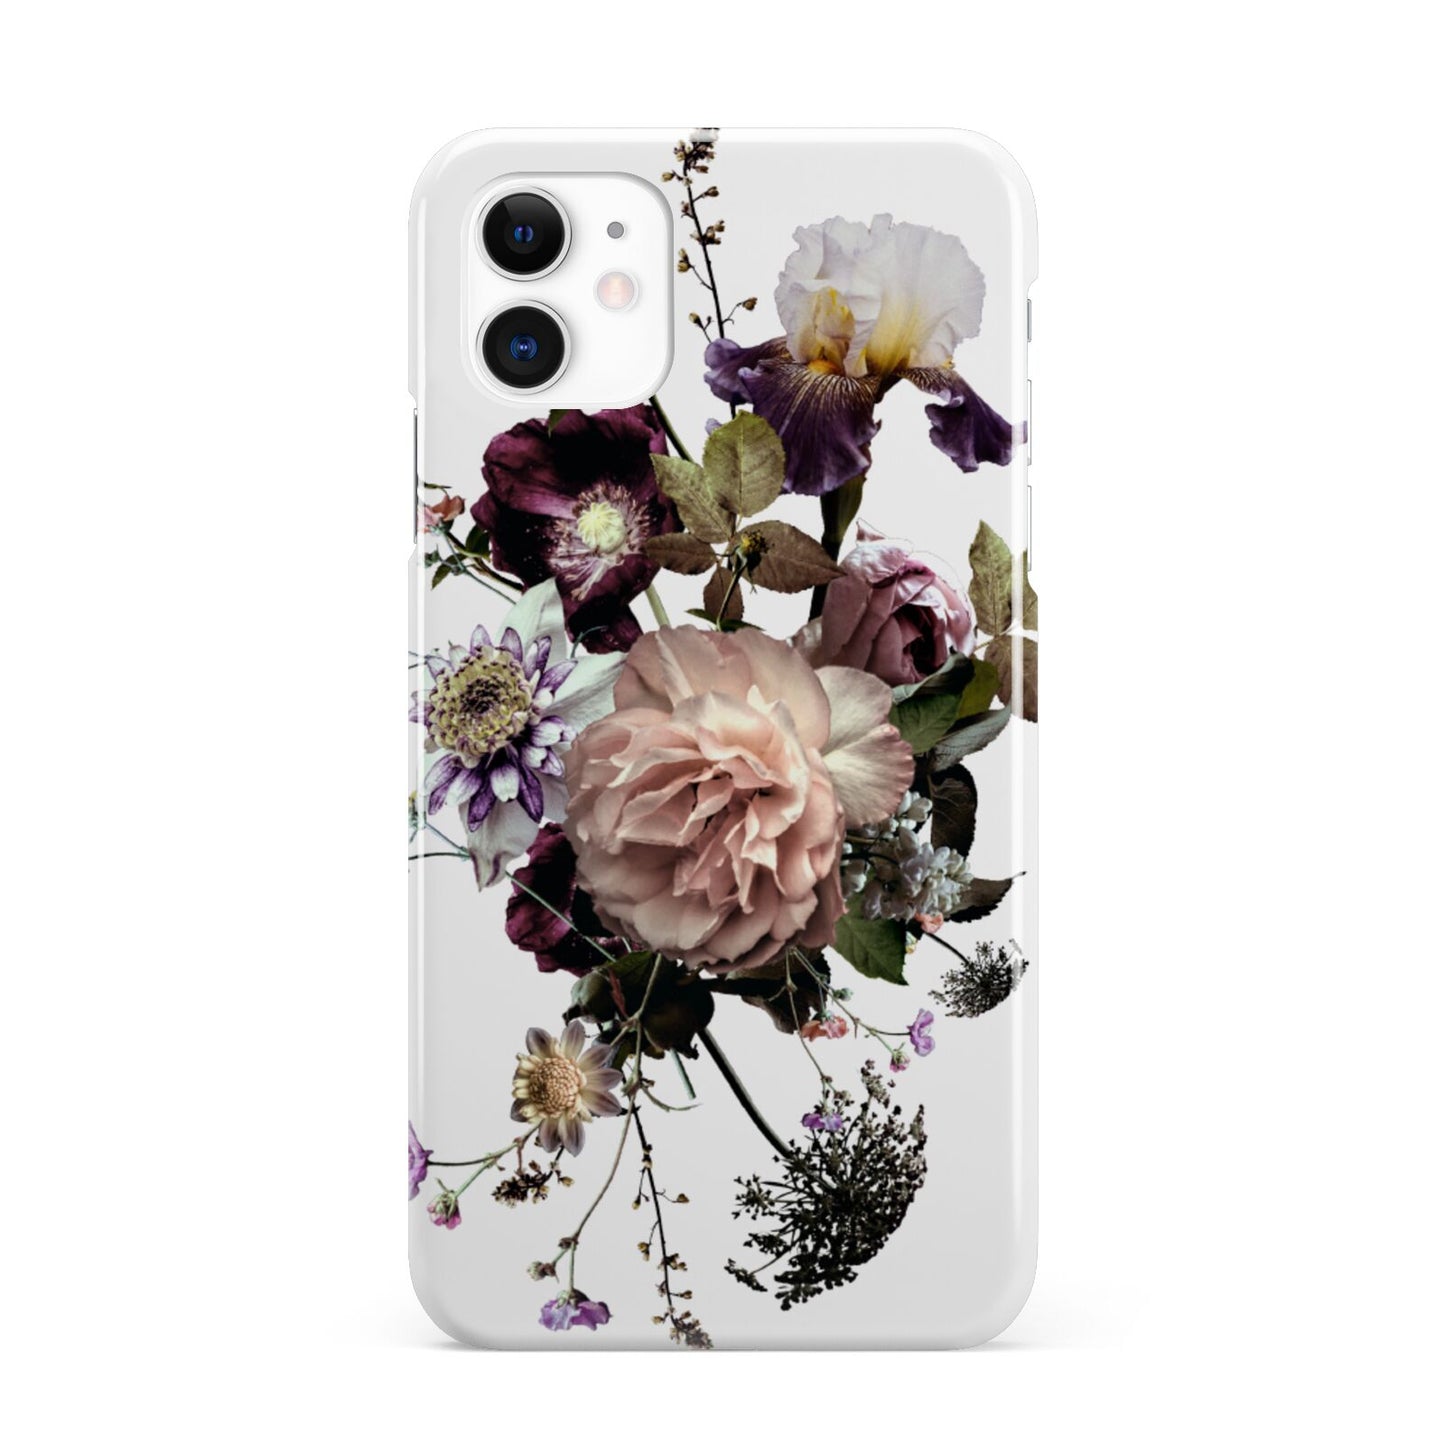 Vintage Flowers iPhone 11 3D Snap Case